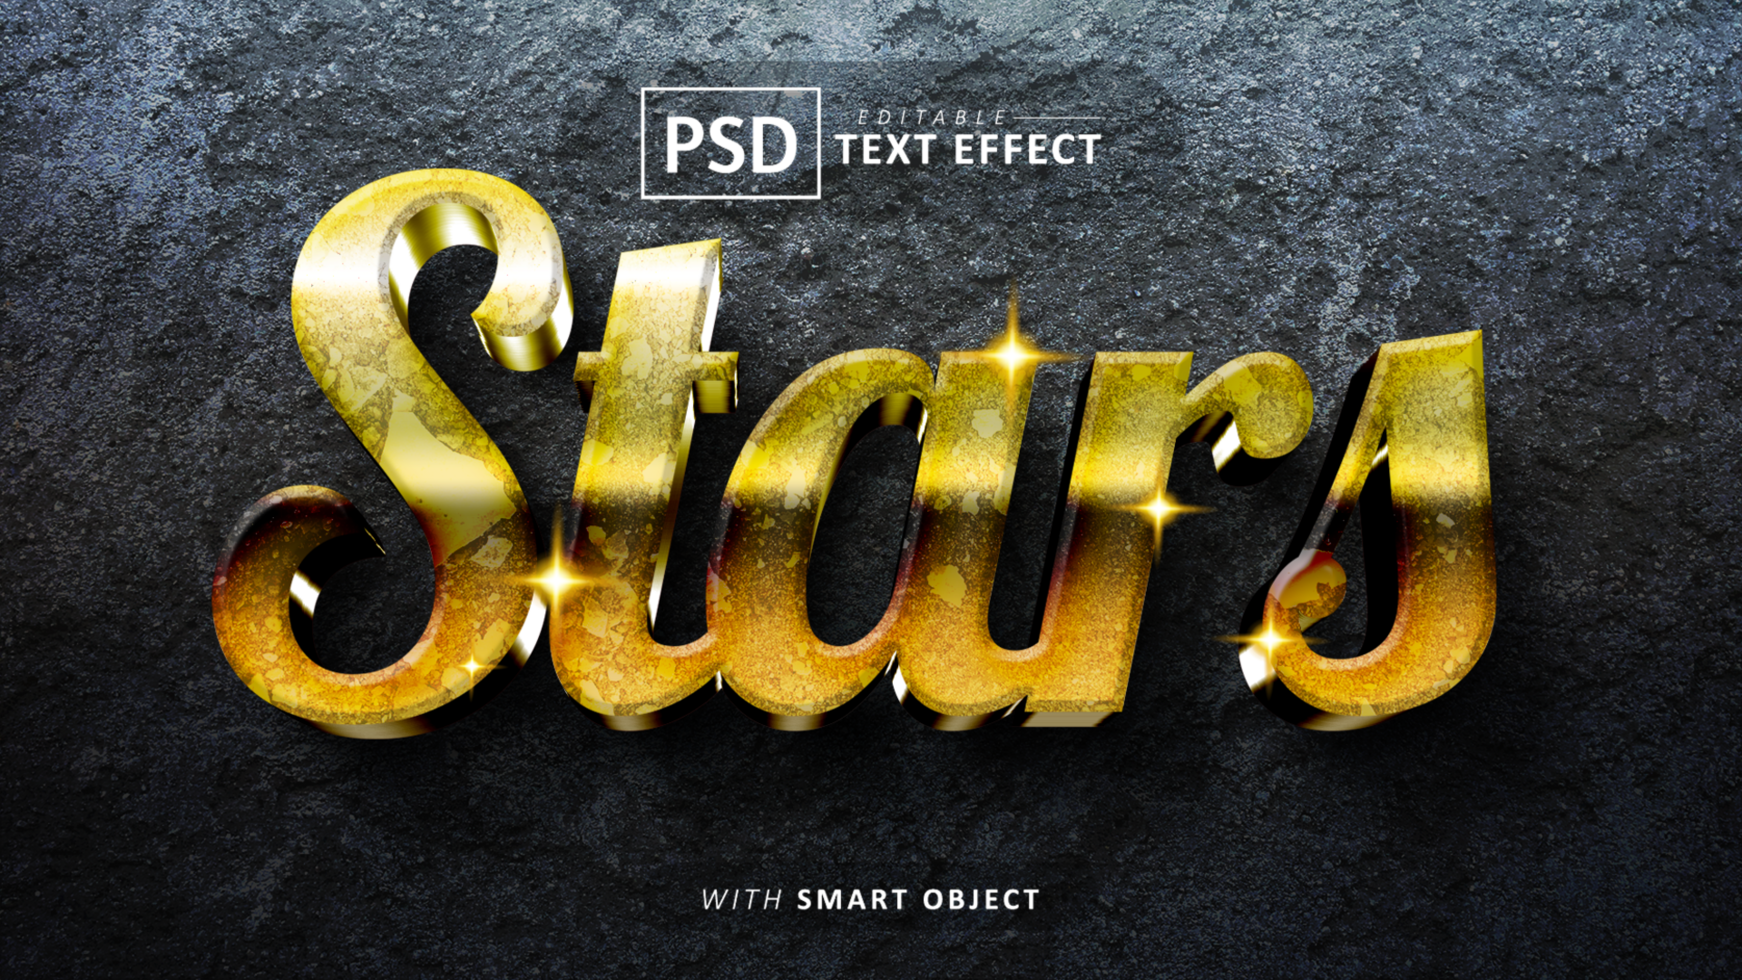 Star 3d text effect editable psd